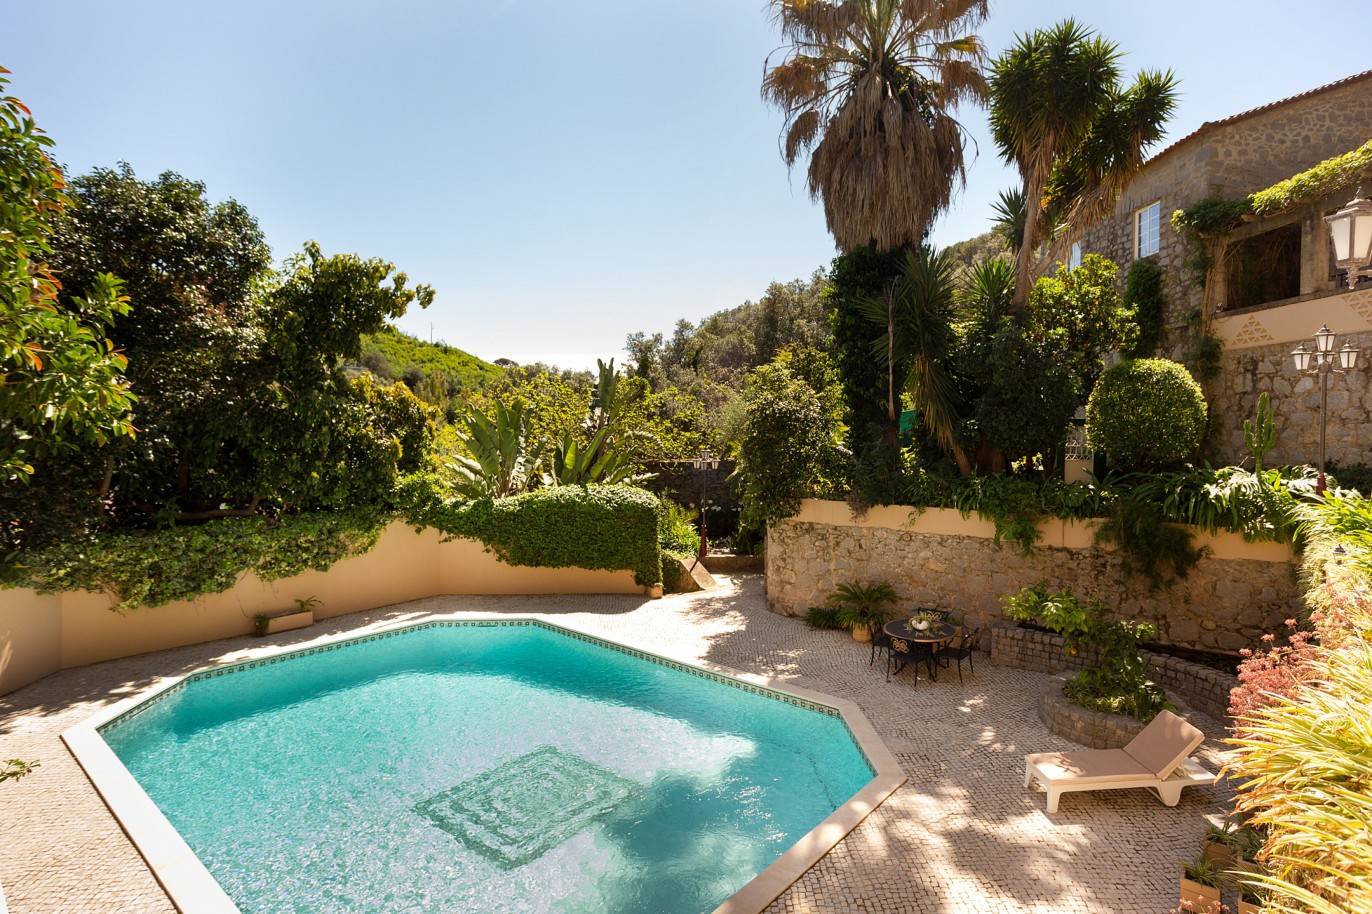 Moradia V5 com piscina, para venda em Caldas de Monchique, Algarve_220552